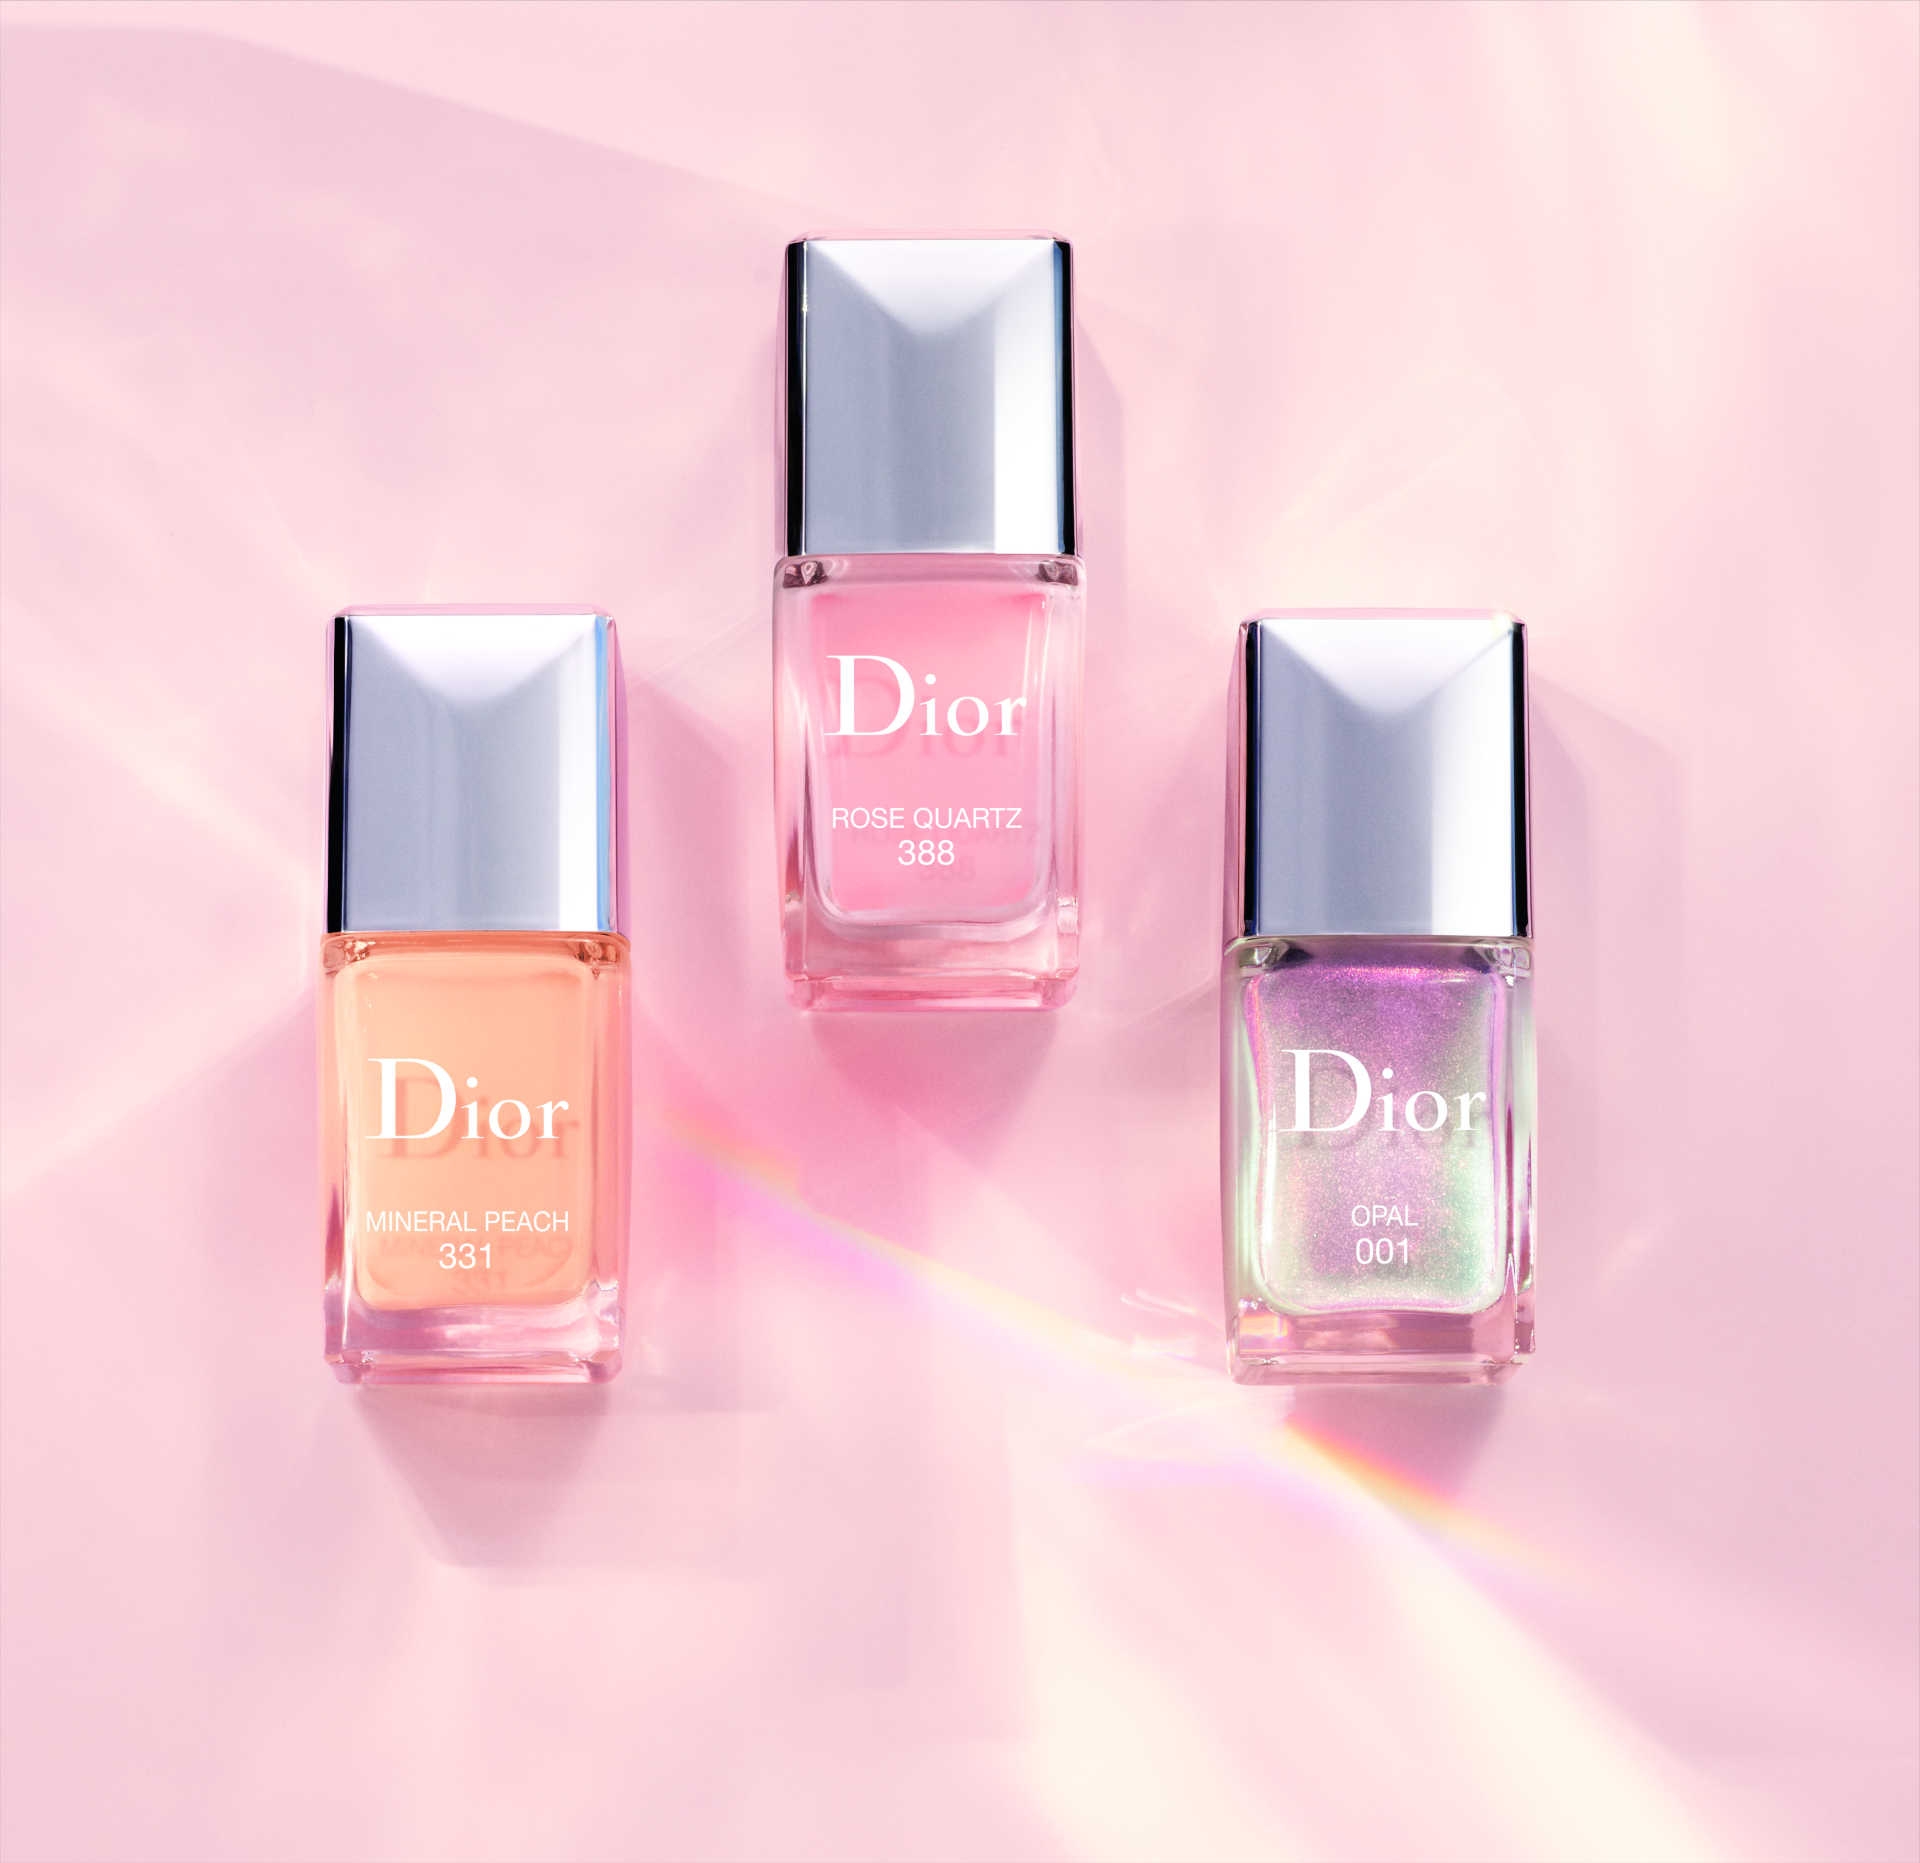 Лаки Dior Vernis, оттенки 331- персиковый минерал и 338-розовый кварц, лимитированное верхнее покрытие для лака Dior Vernis Top Coat, оттенок 001-опал, Mineral Glow, Dior